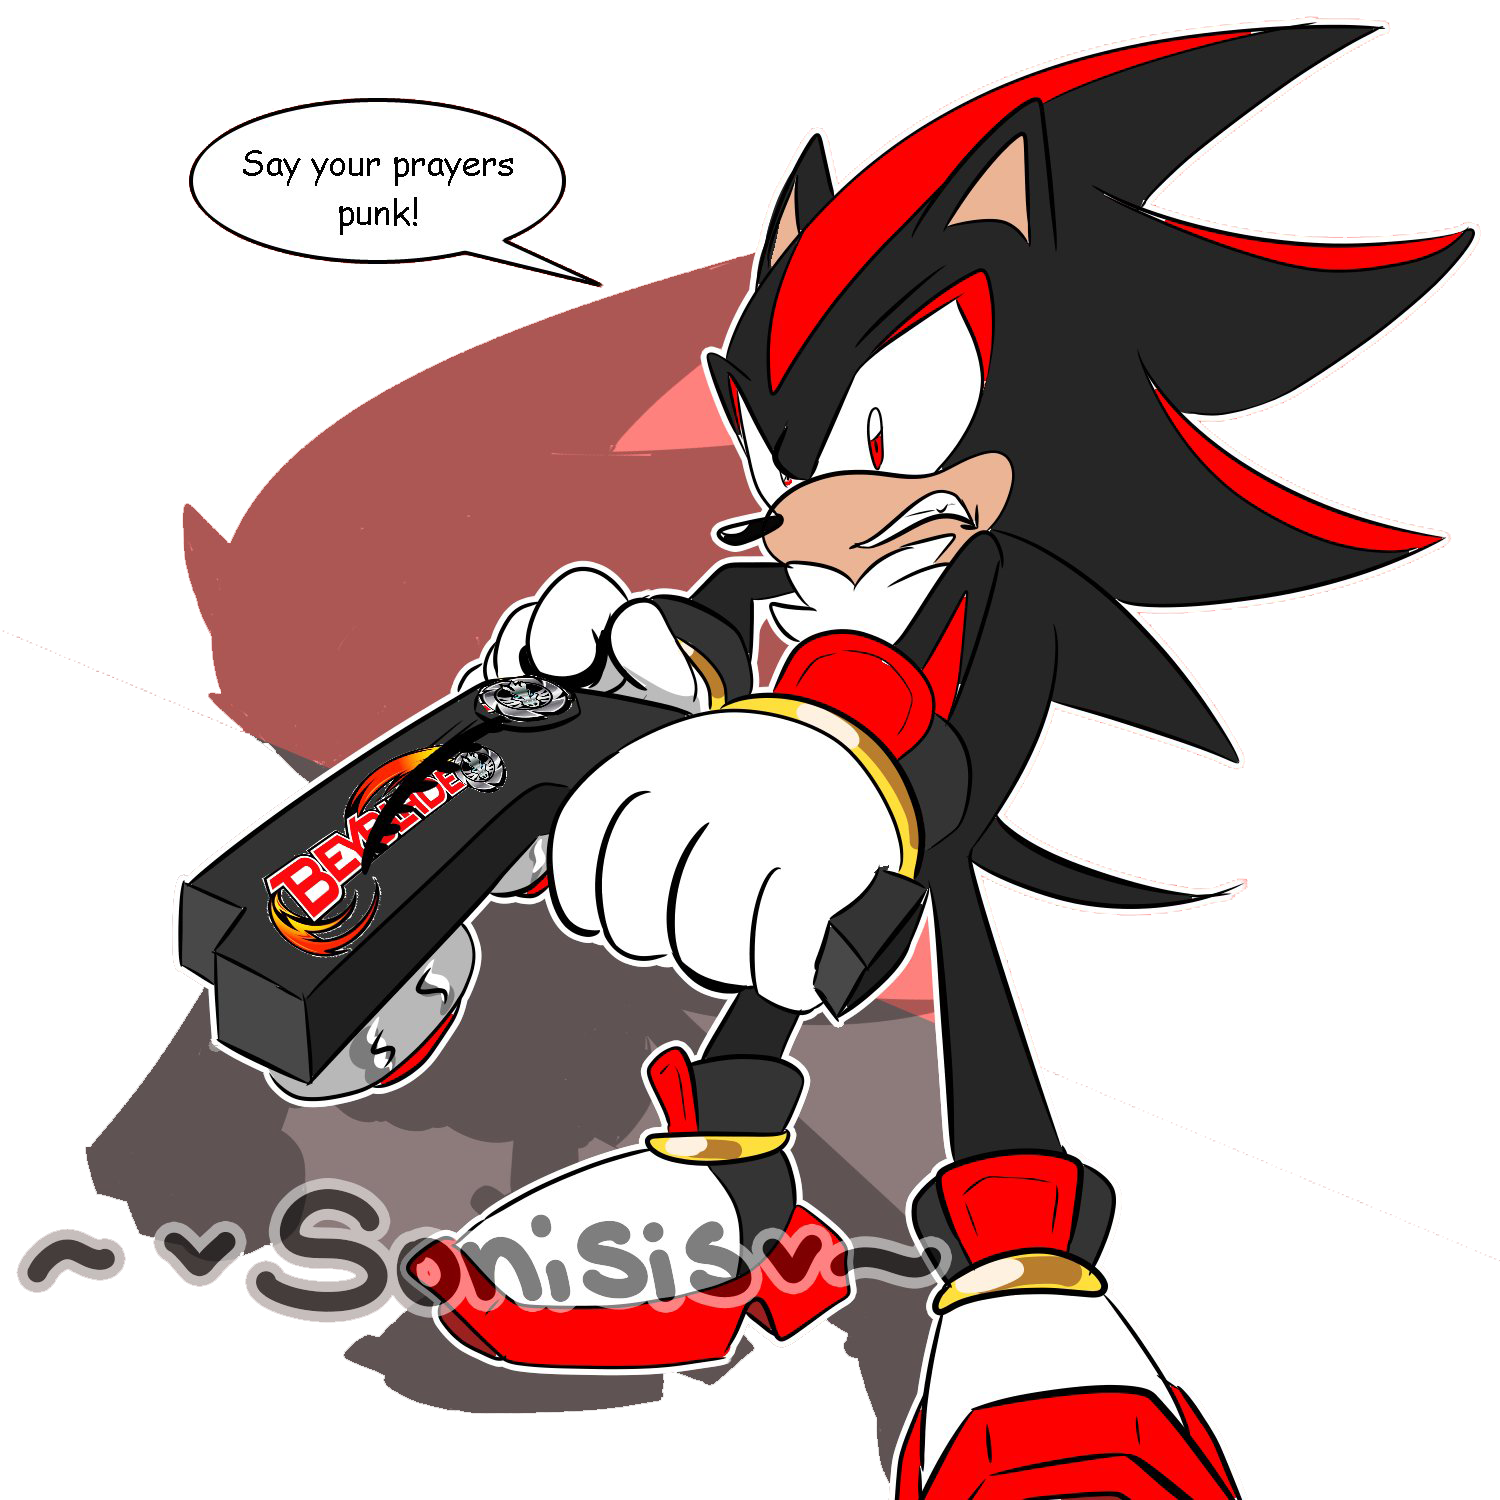 Schatten das Igel-Sonic-PNG-Bild